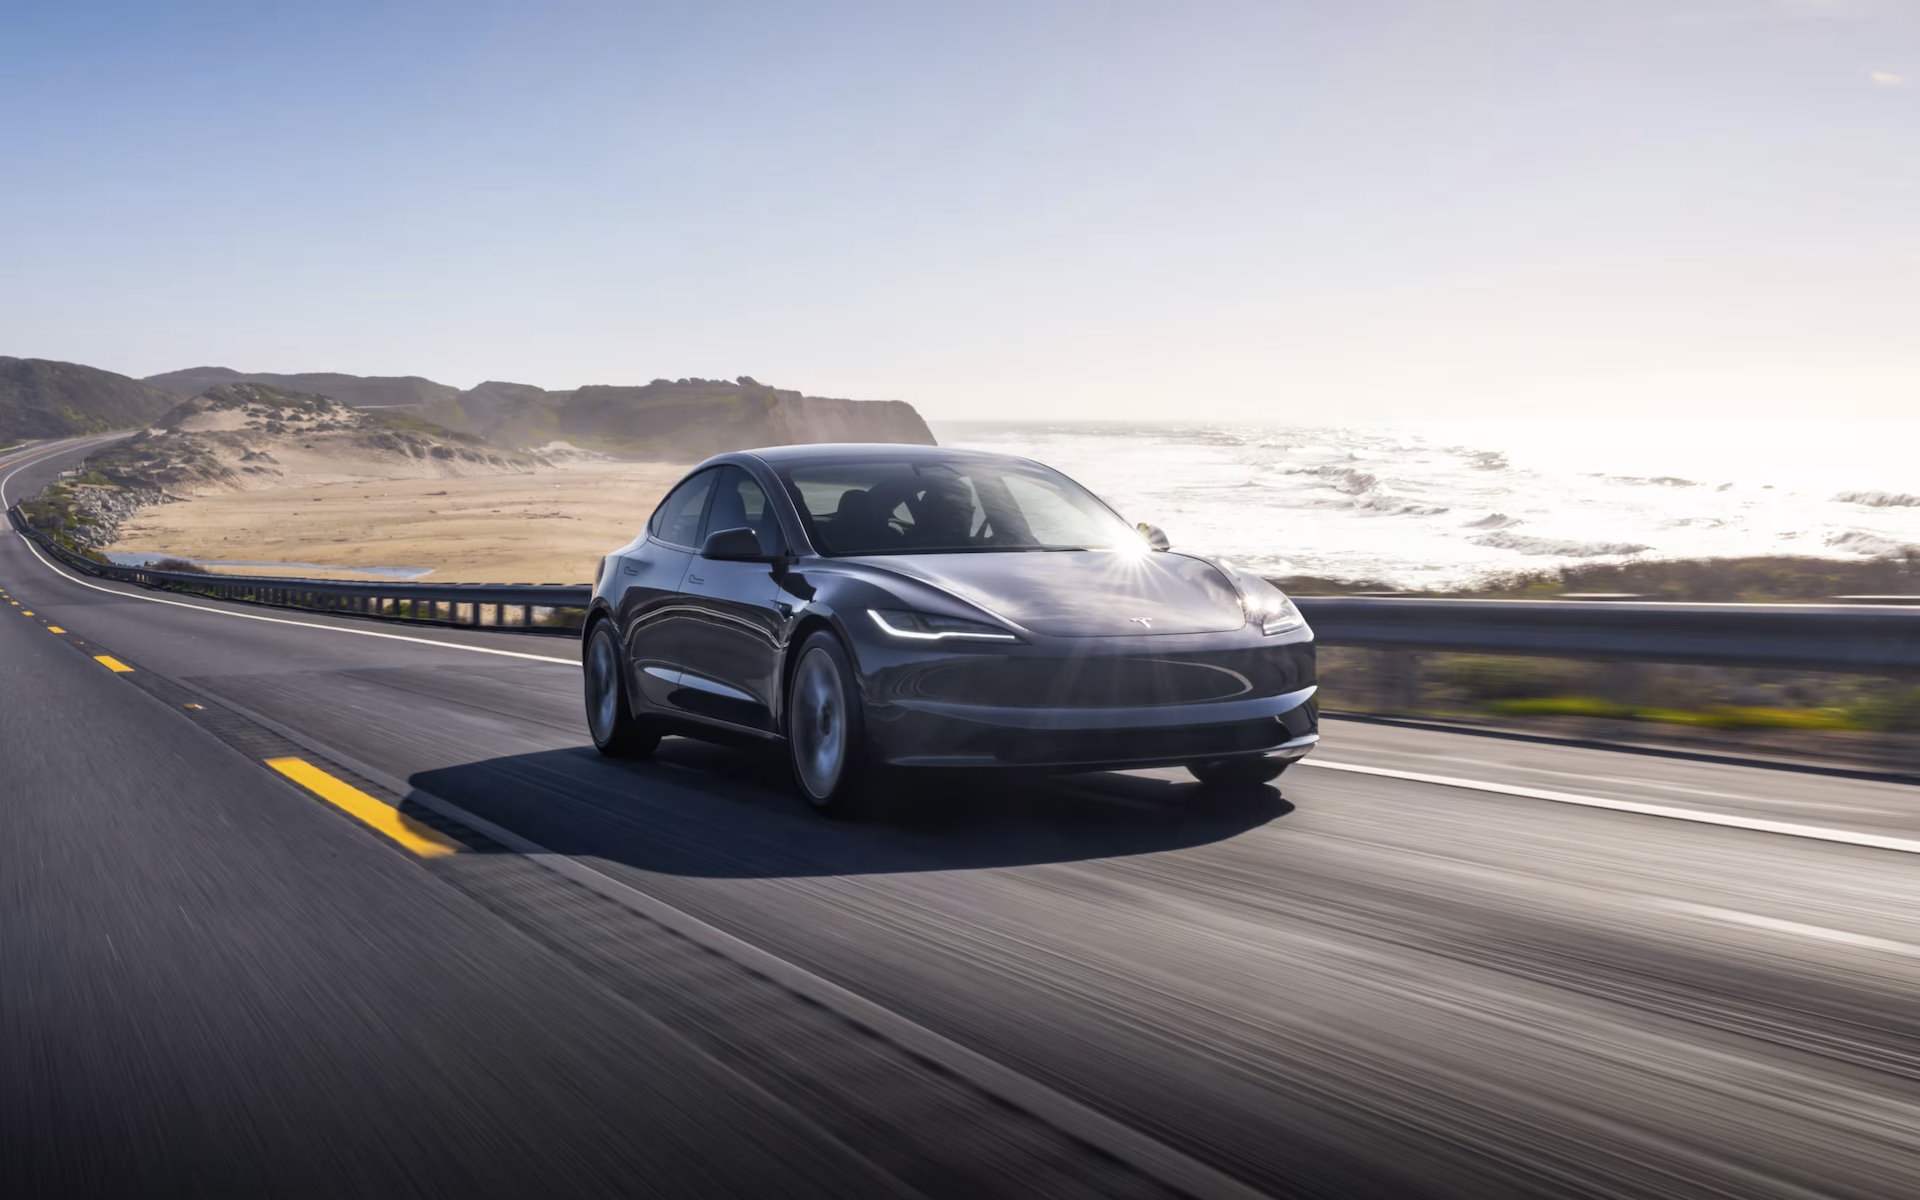 Les batteries des voitures électriques auraient une bonne durée de vie, selon un nouveau rapport. © Tesla